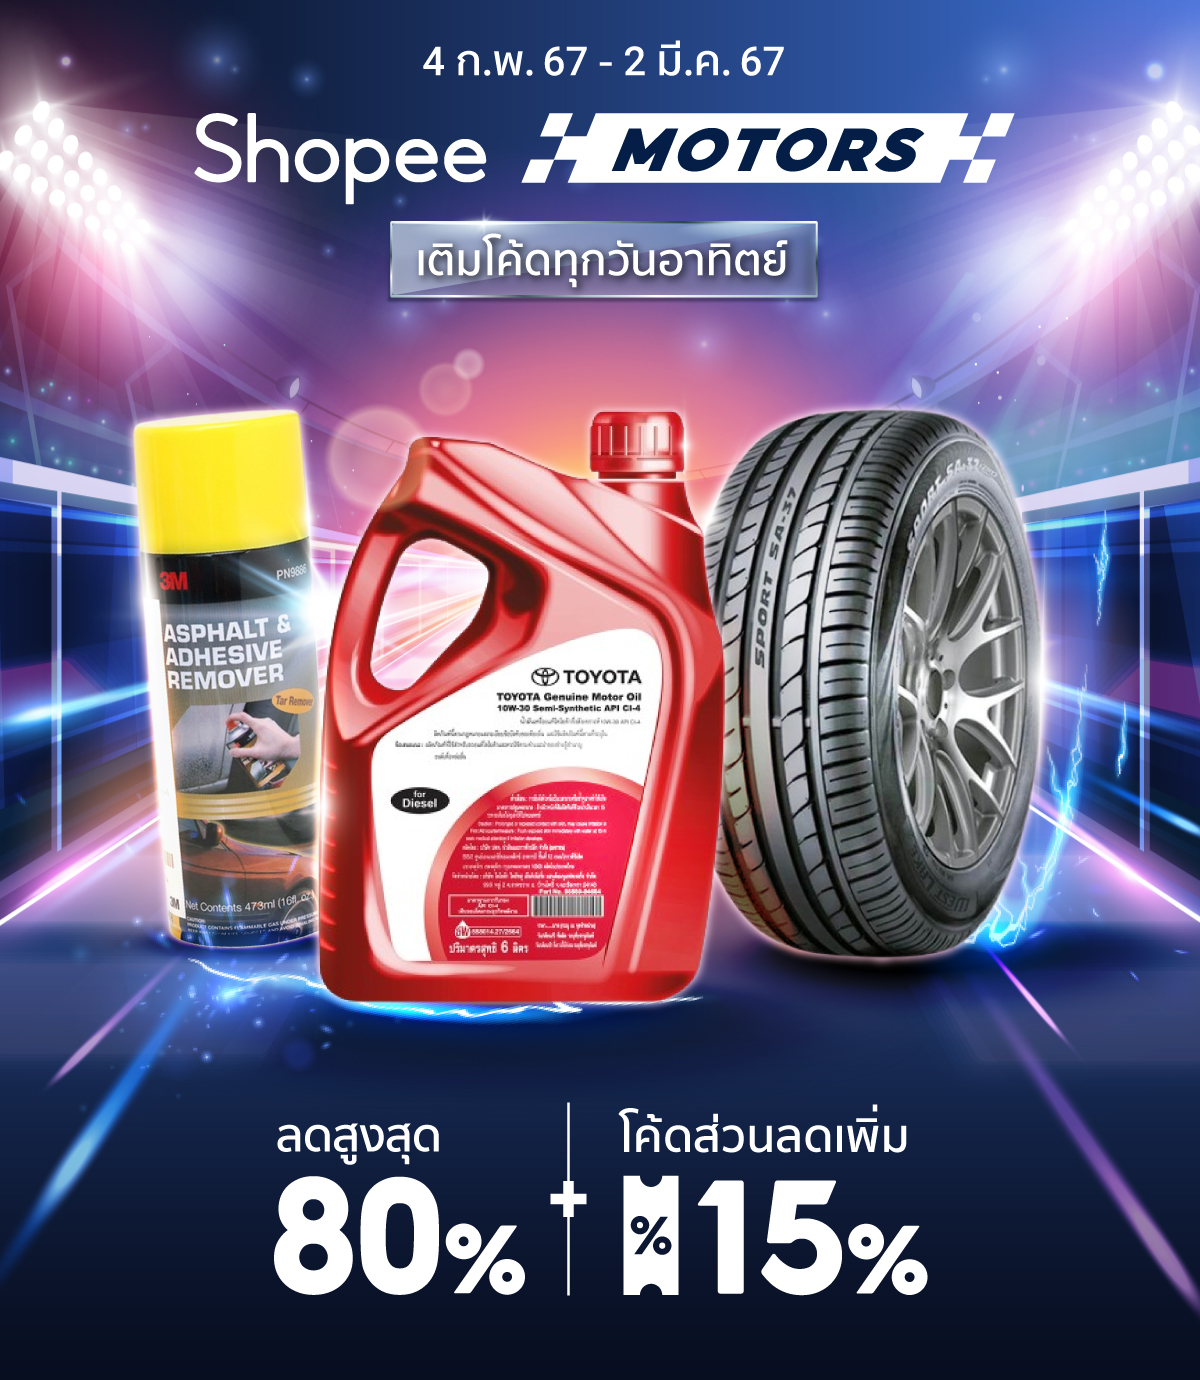 Shopee Motors